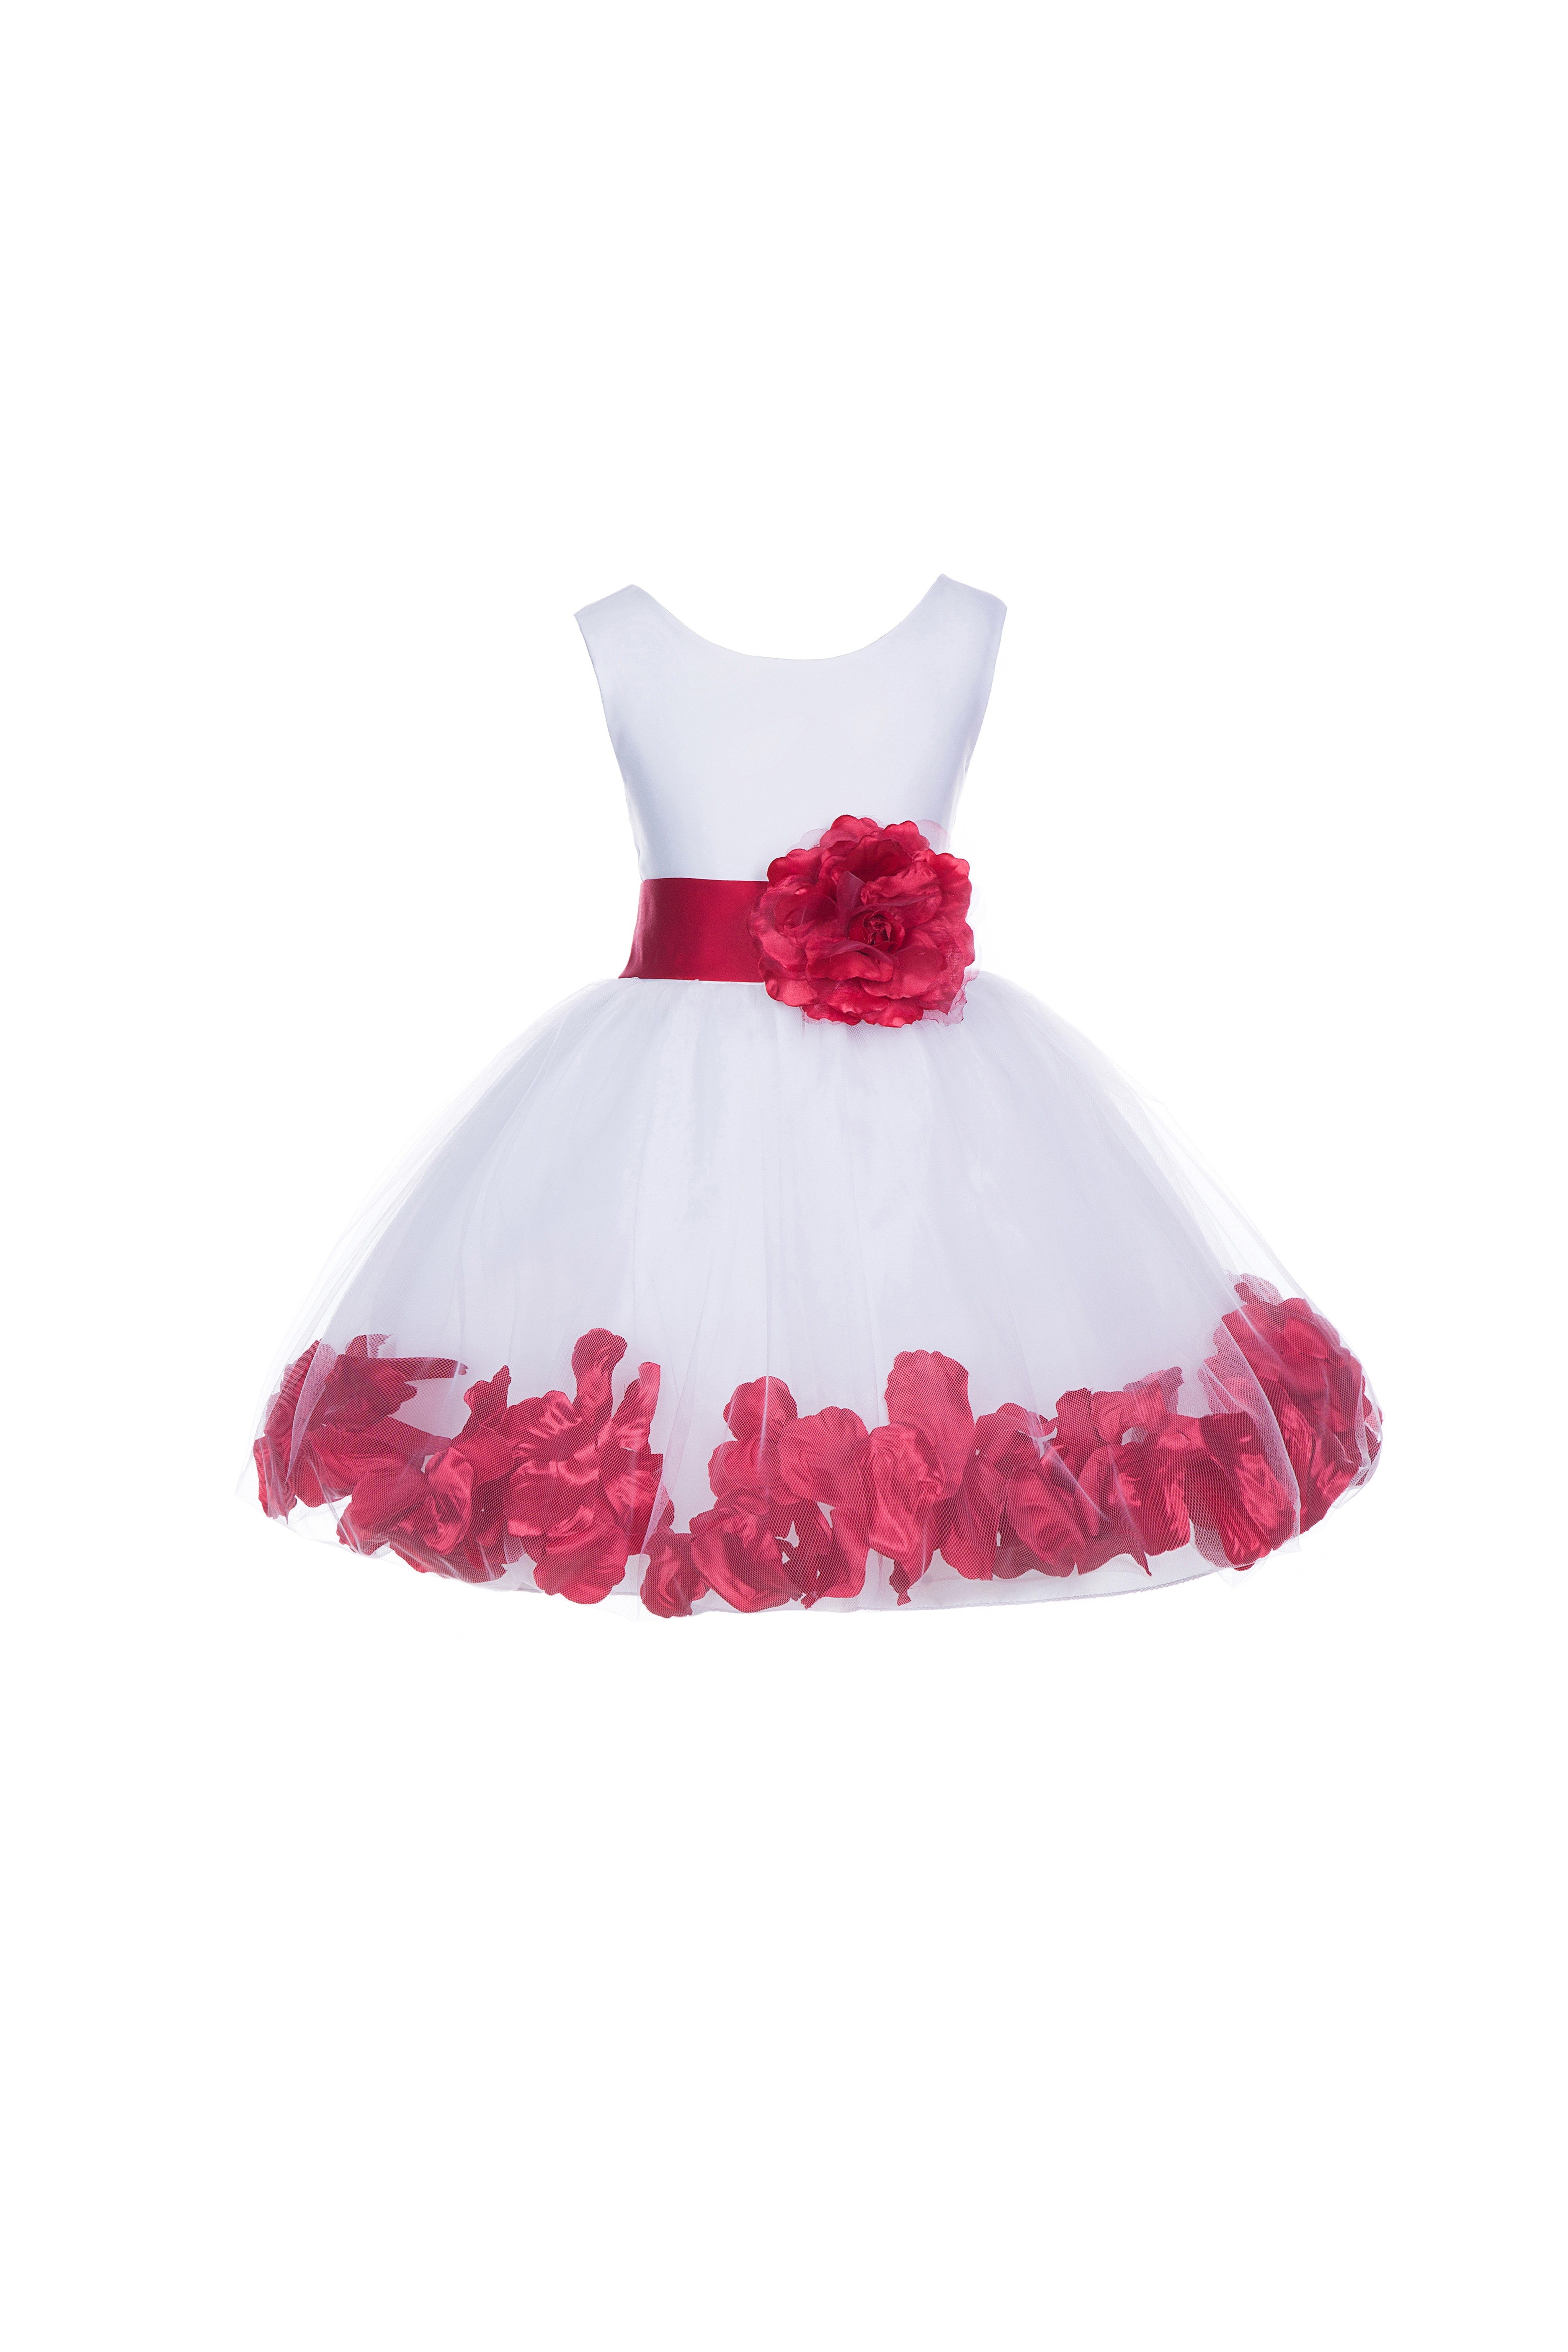 White/Cherry Tulle Rose Petals Knee Length Flower Girl Dress 306S